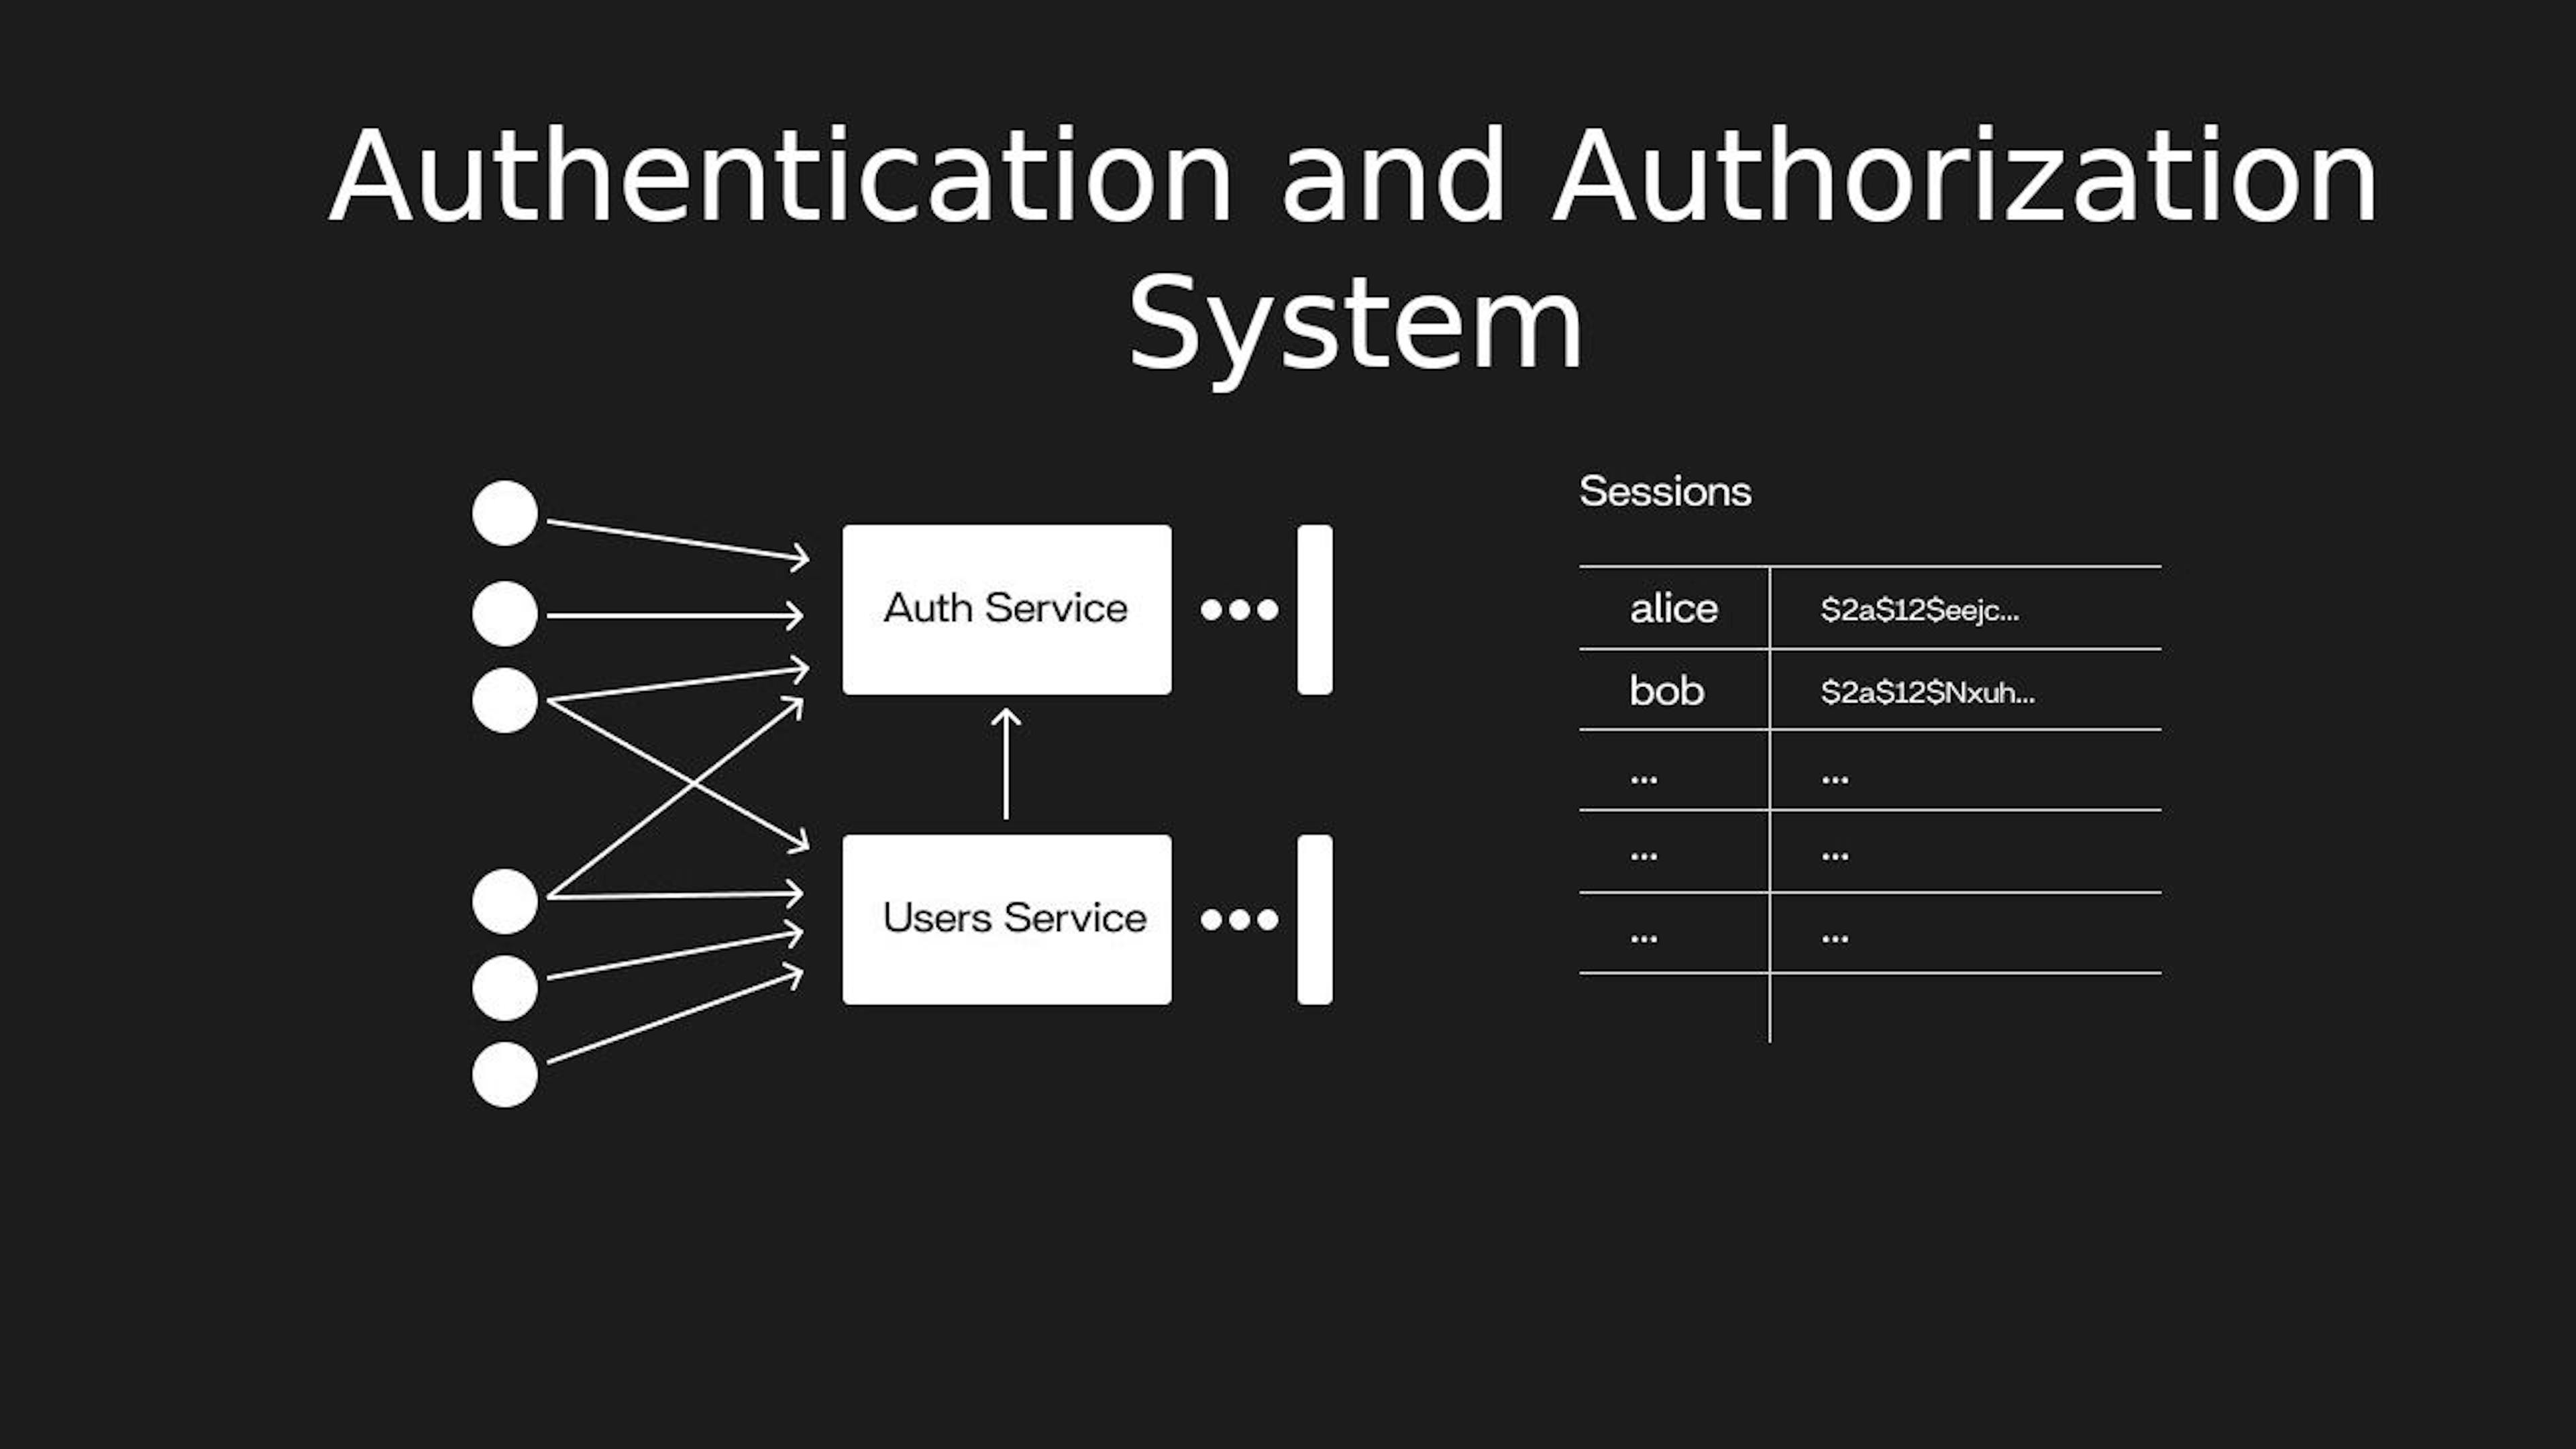 Diseño del sistema de autenticación y autorización (fuente: InterviewPen. Modificado)